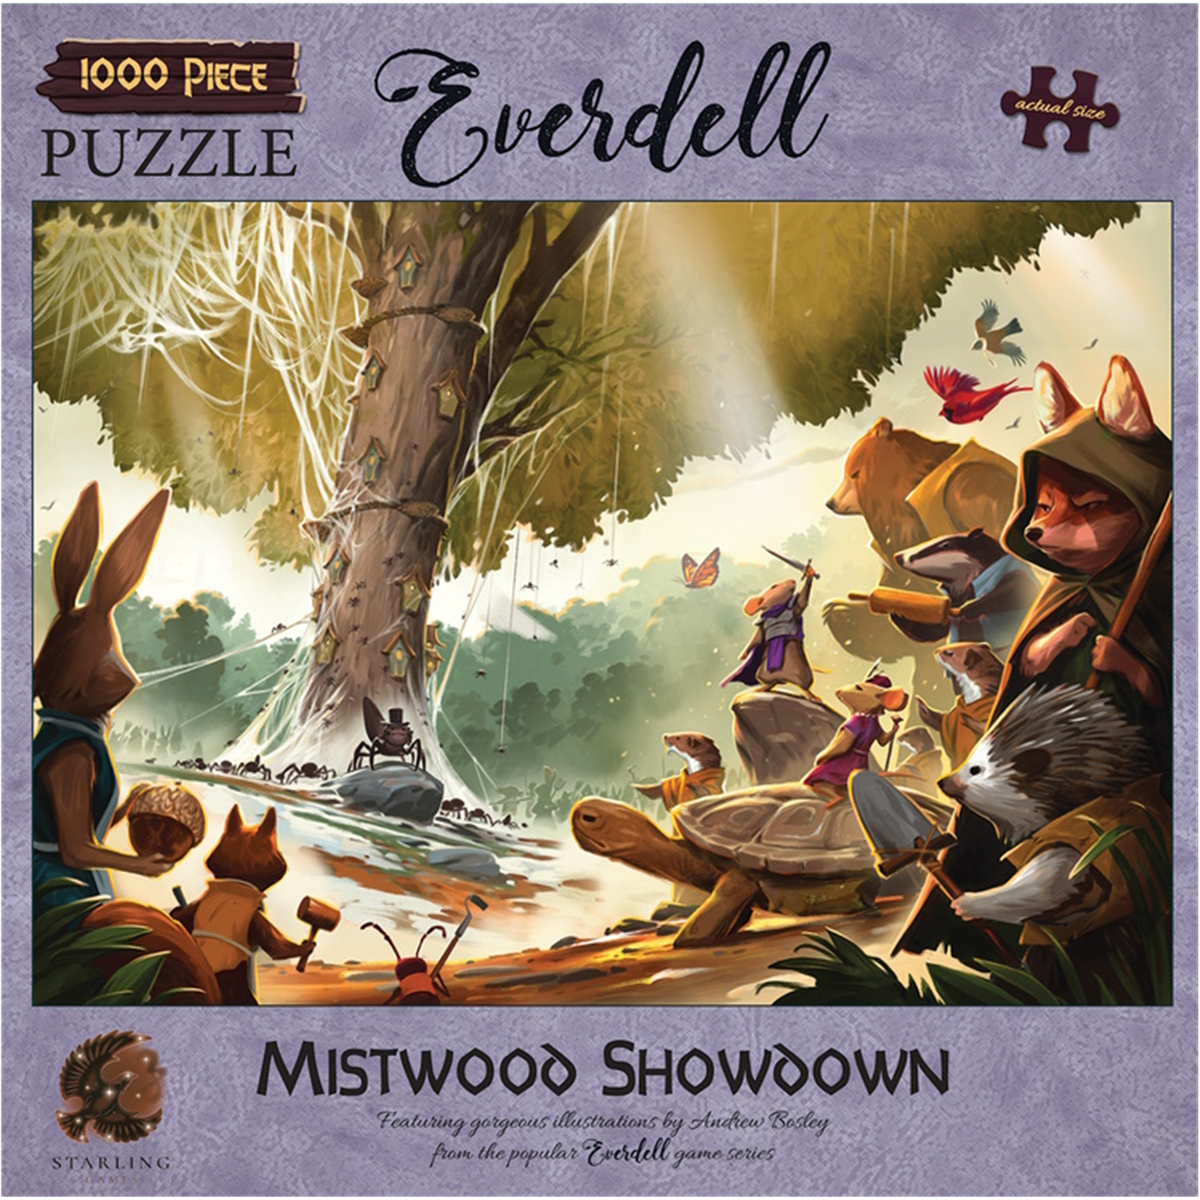 Everdell puzzle - Mistwood showdown